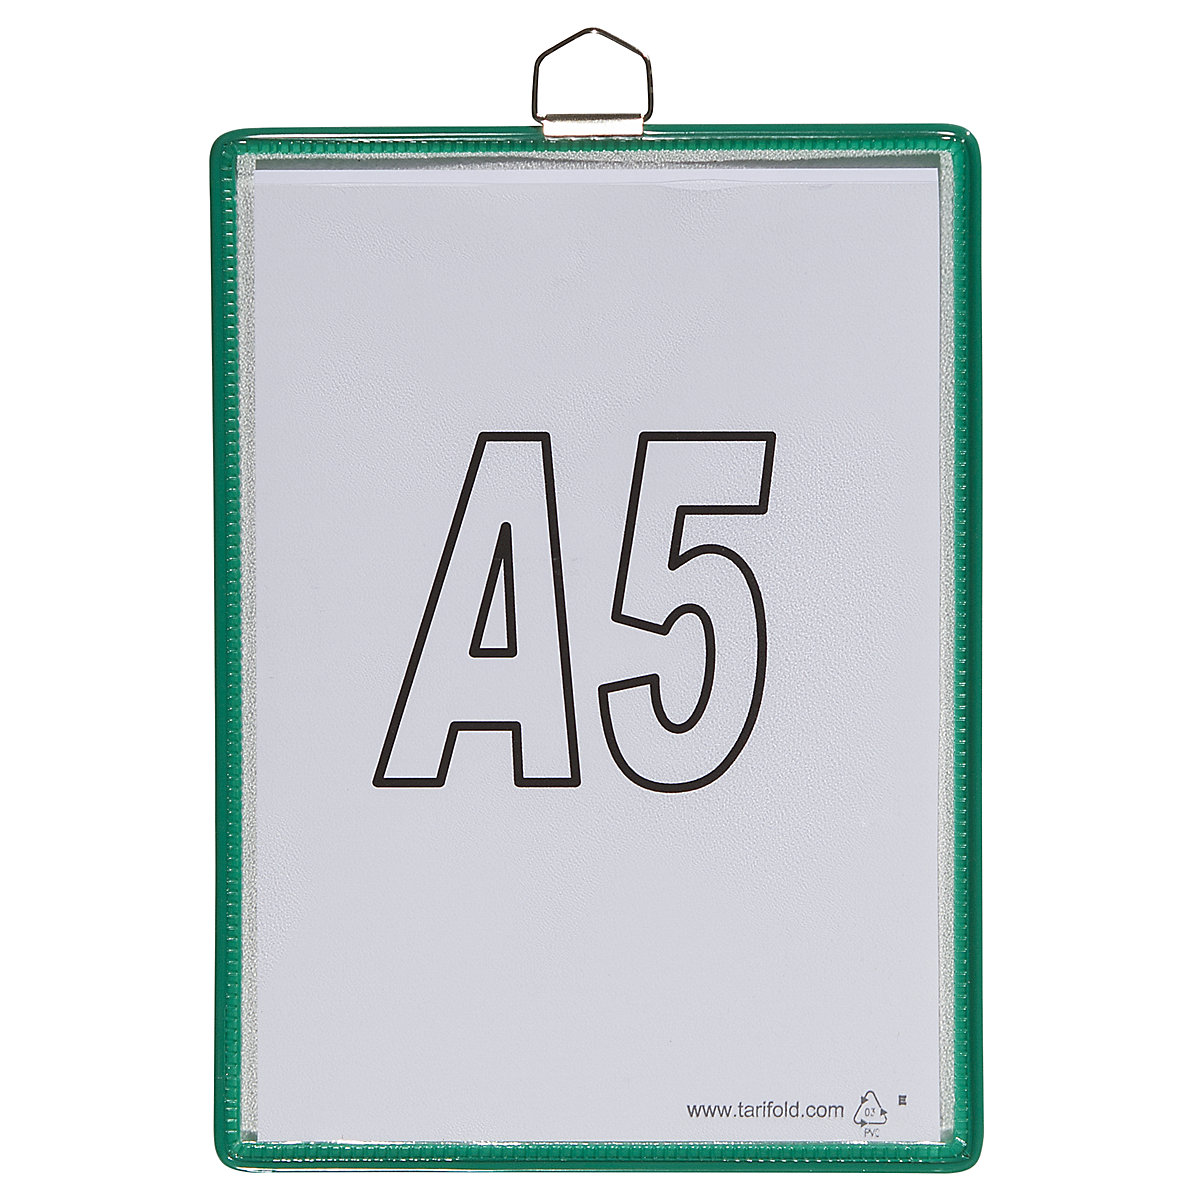 Pochette transparente à accrocher – Tarifold, pour format A5, coloris vert, lot de 10-4